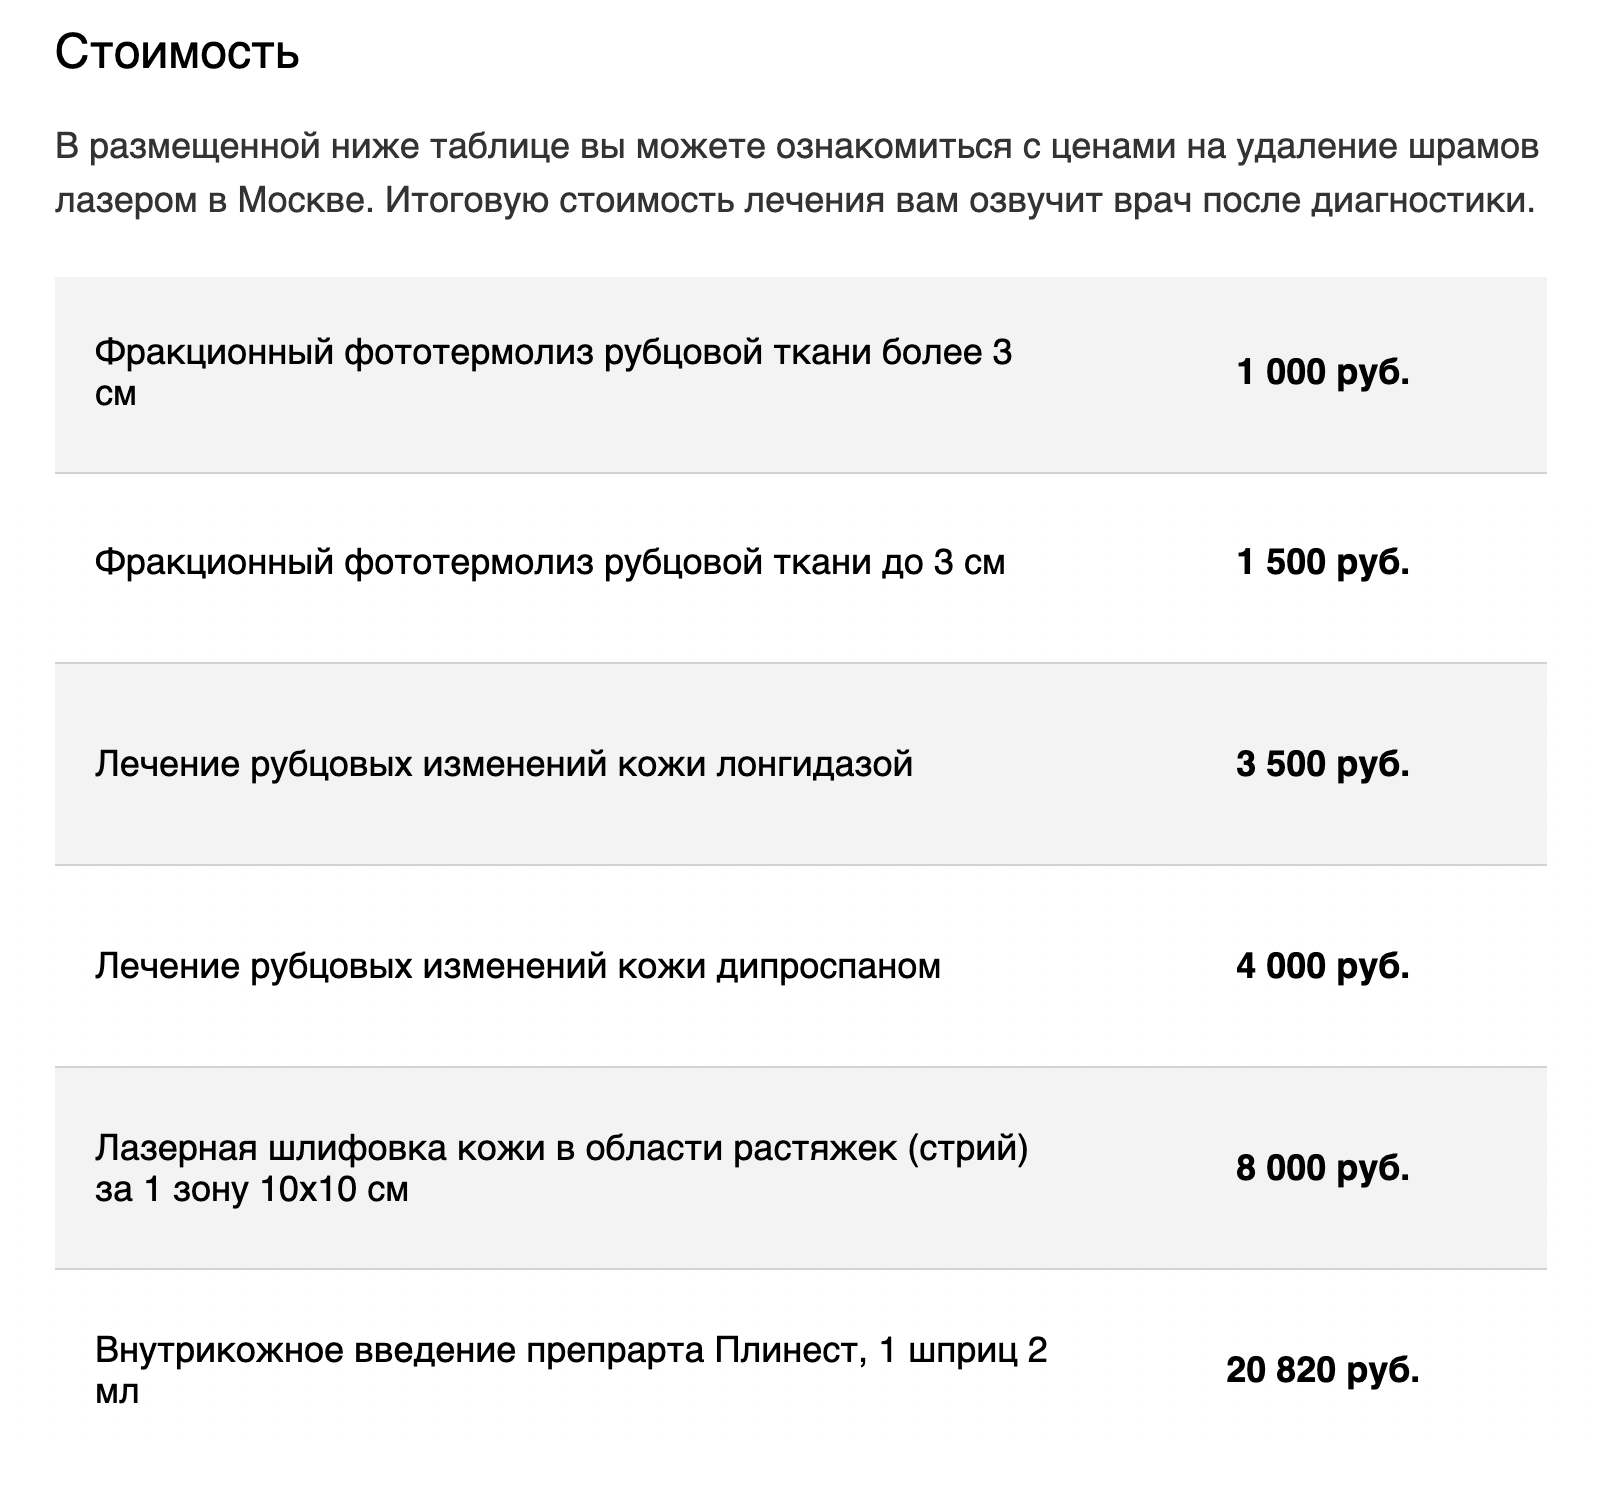 Прейскурант на лазерное удаление рубцов одной из клиник Москвы. Как правило, требуется не одна процедура. Источник: plastica.onclinic.ru